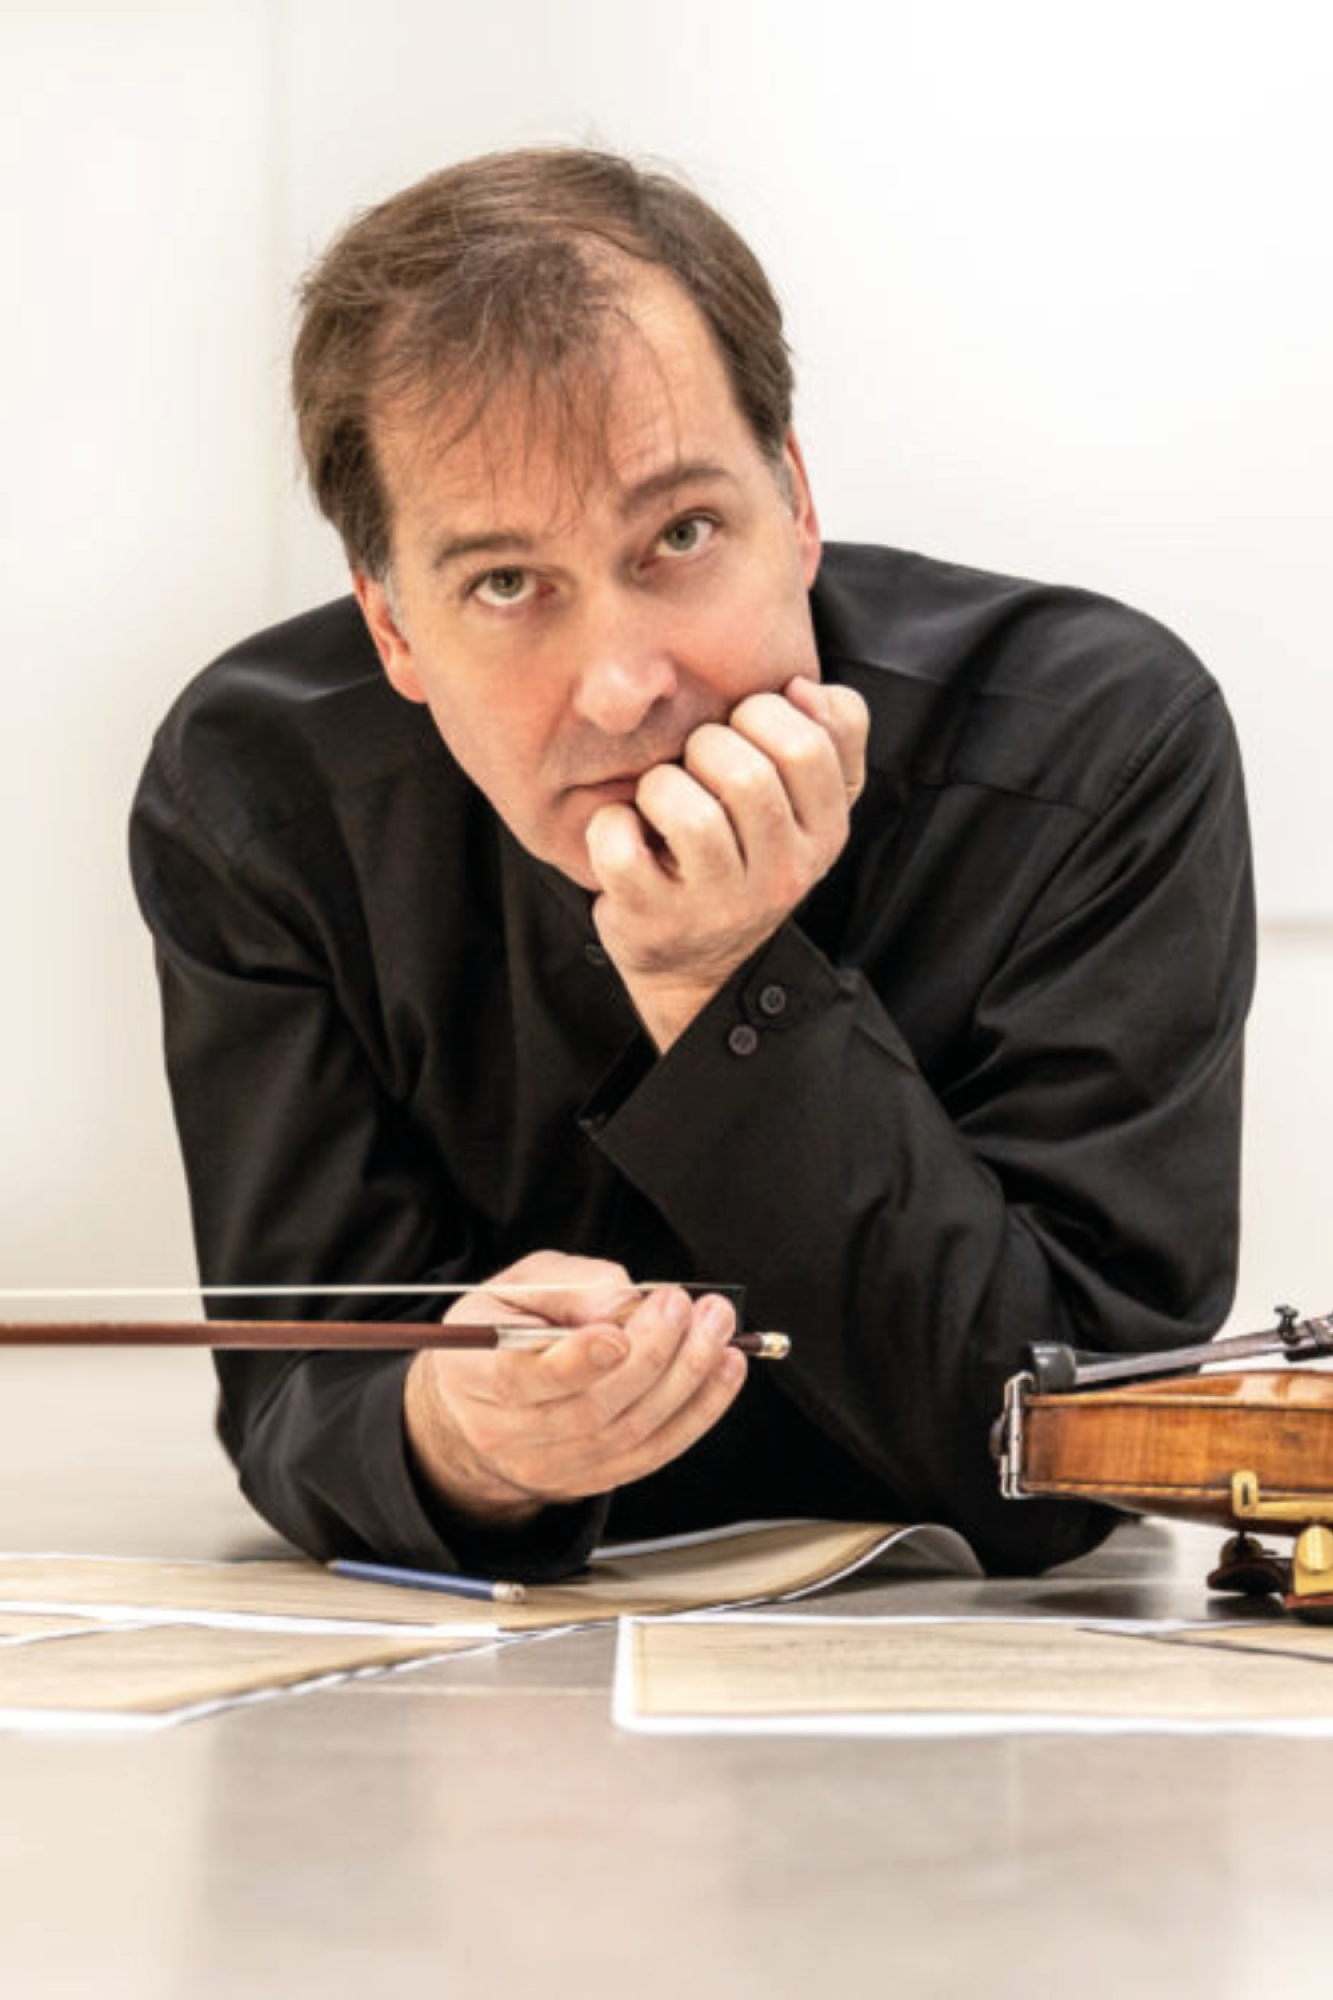 Philippe Graffin, violin masterclasses